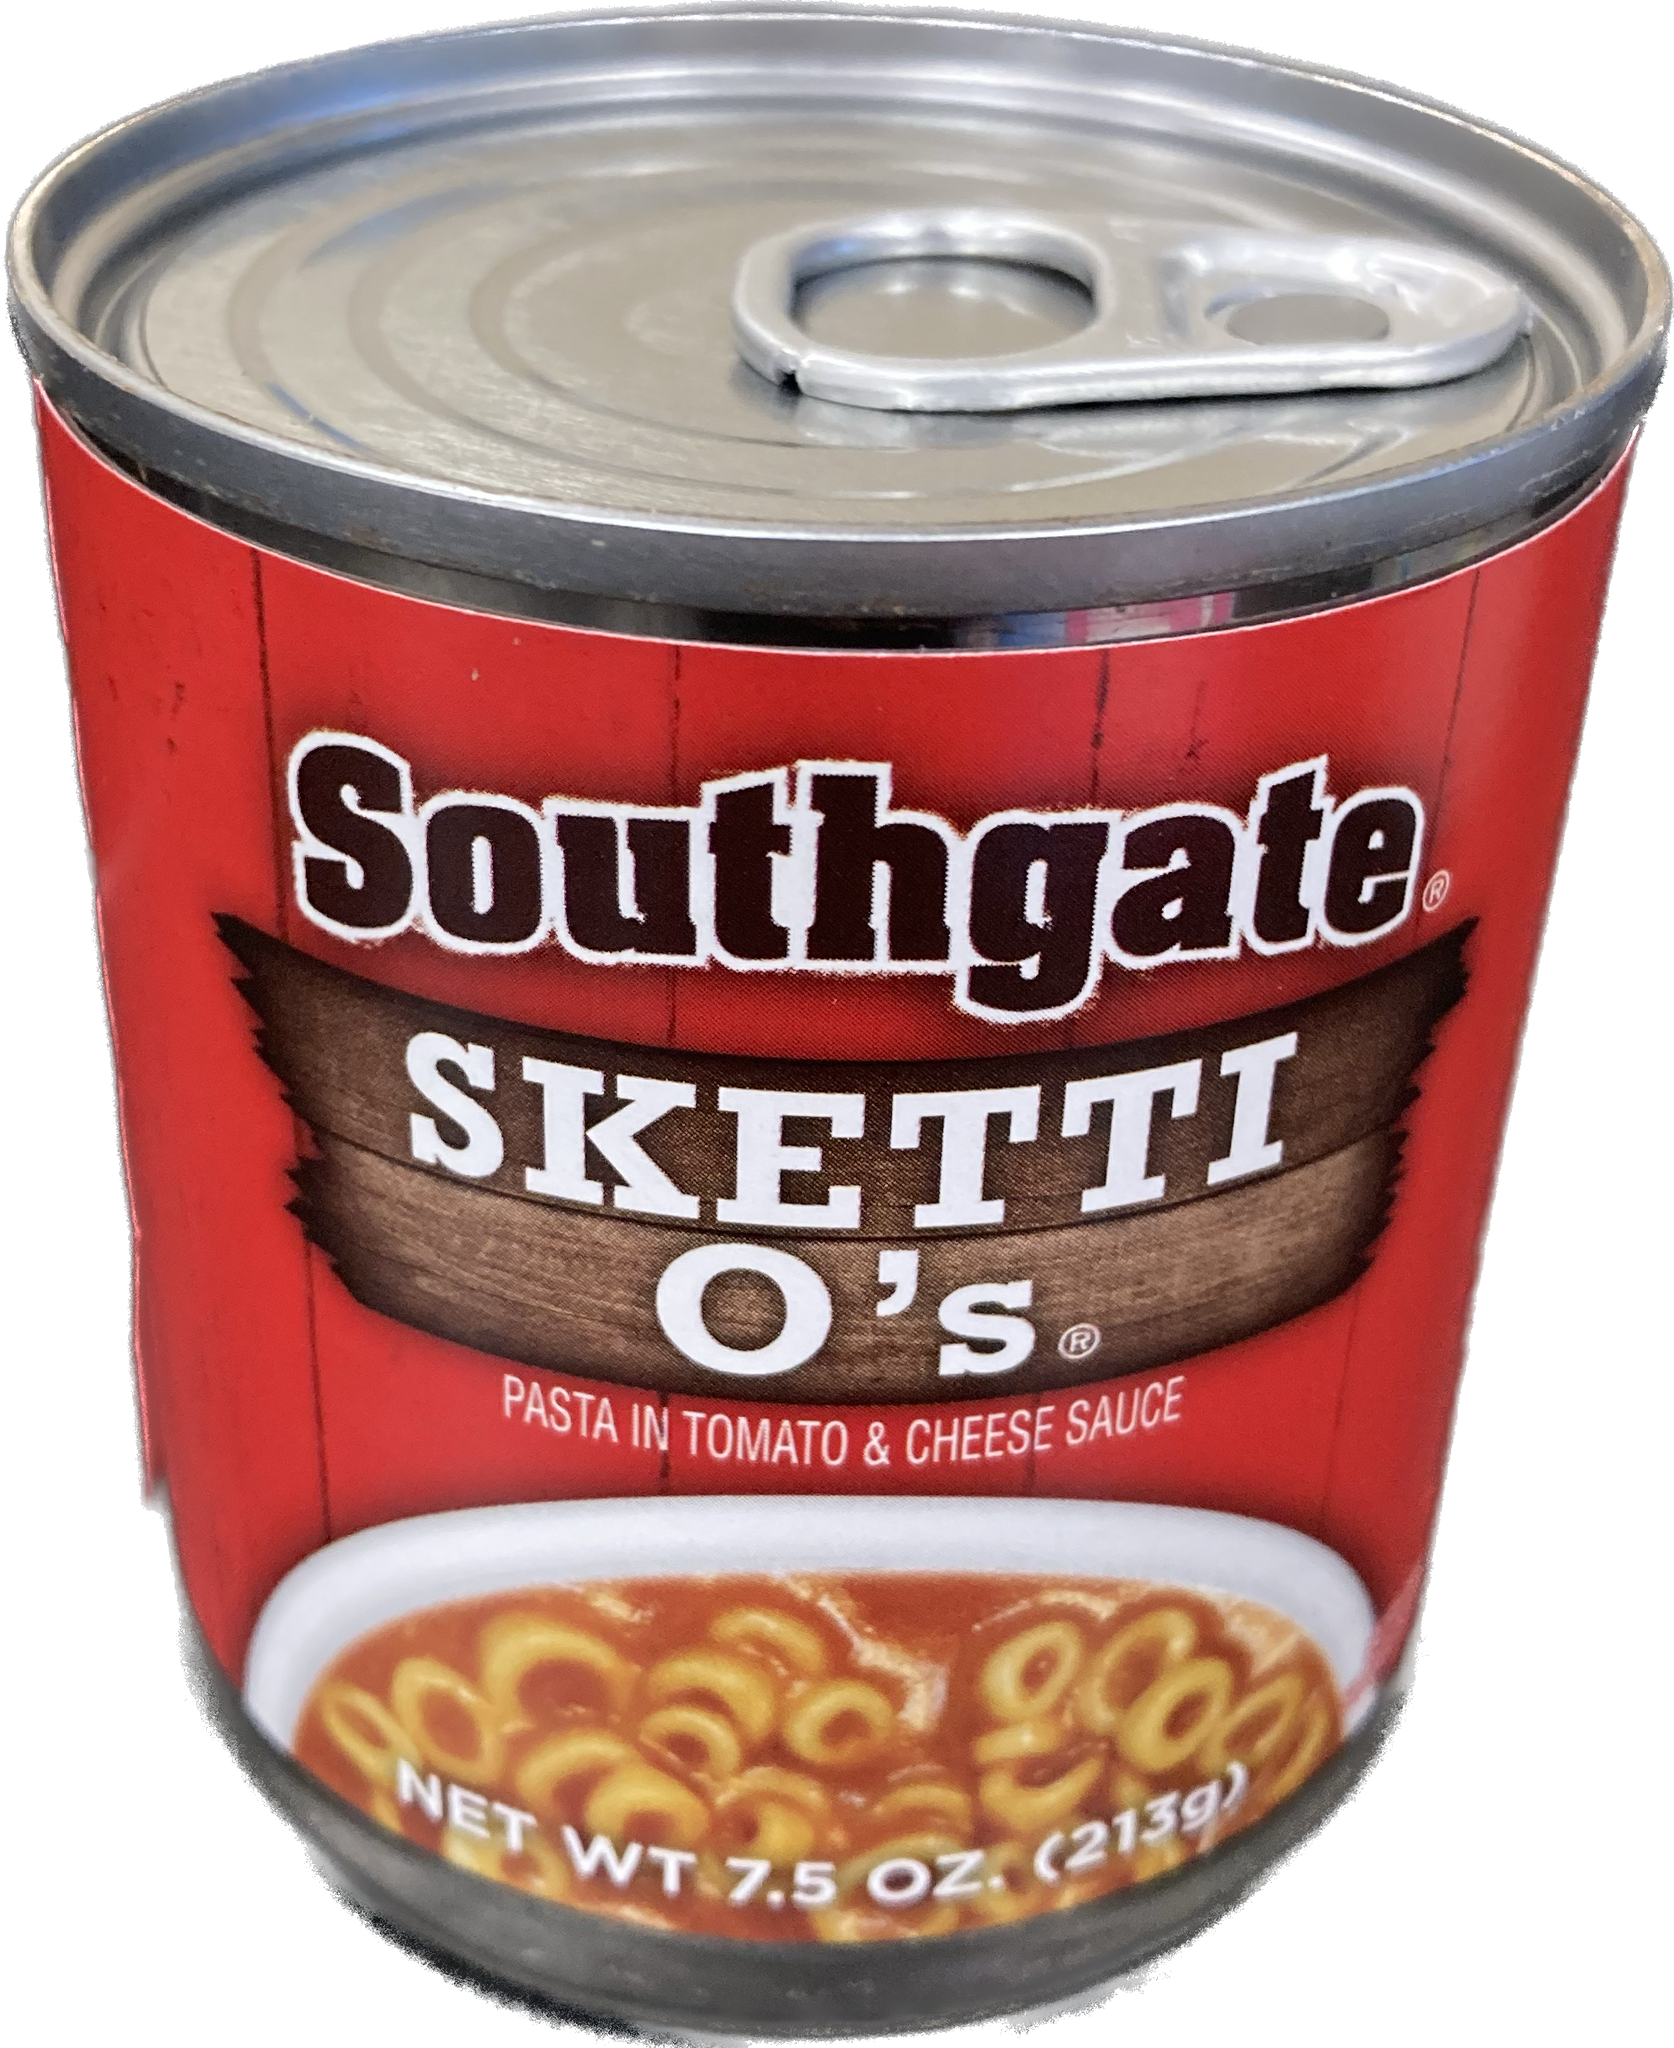 Spaghetti O's (single cans)